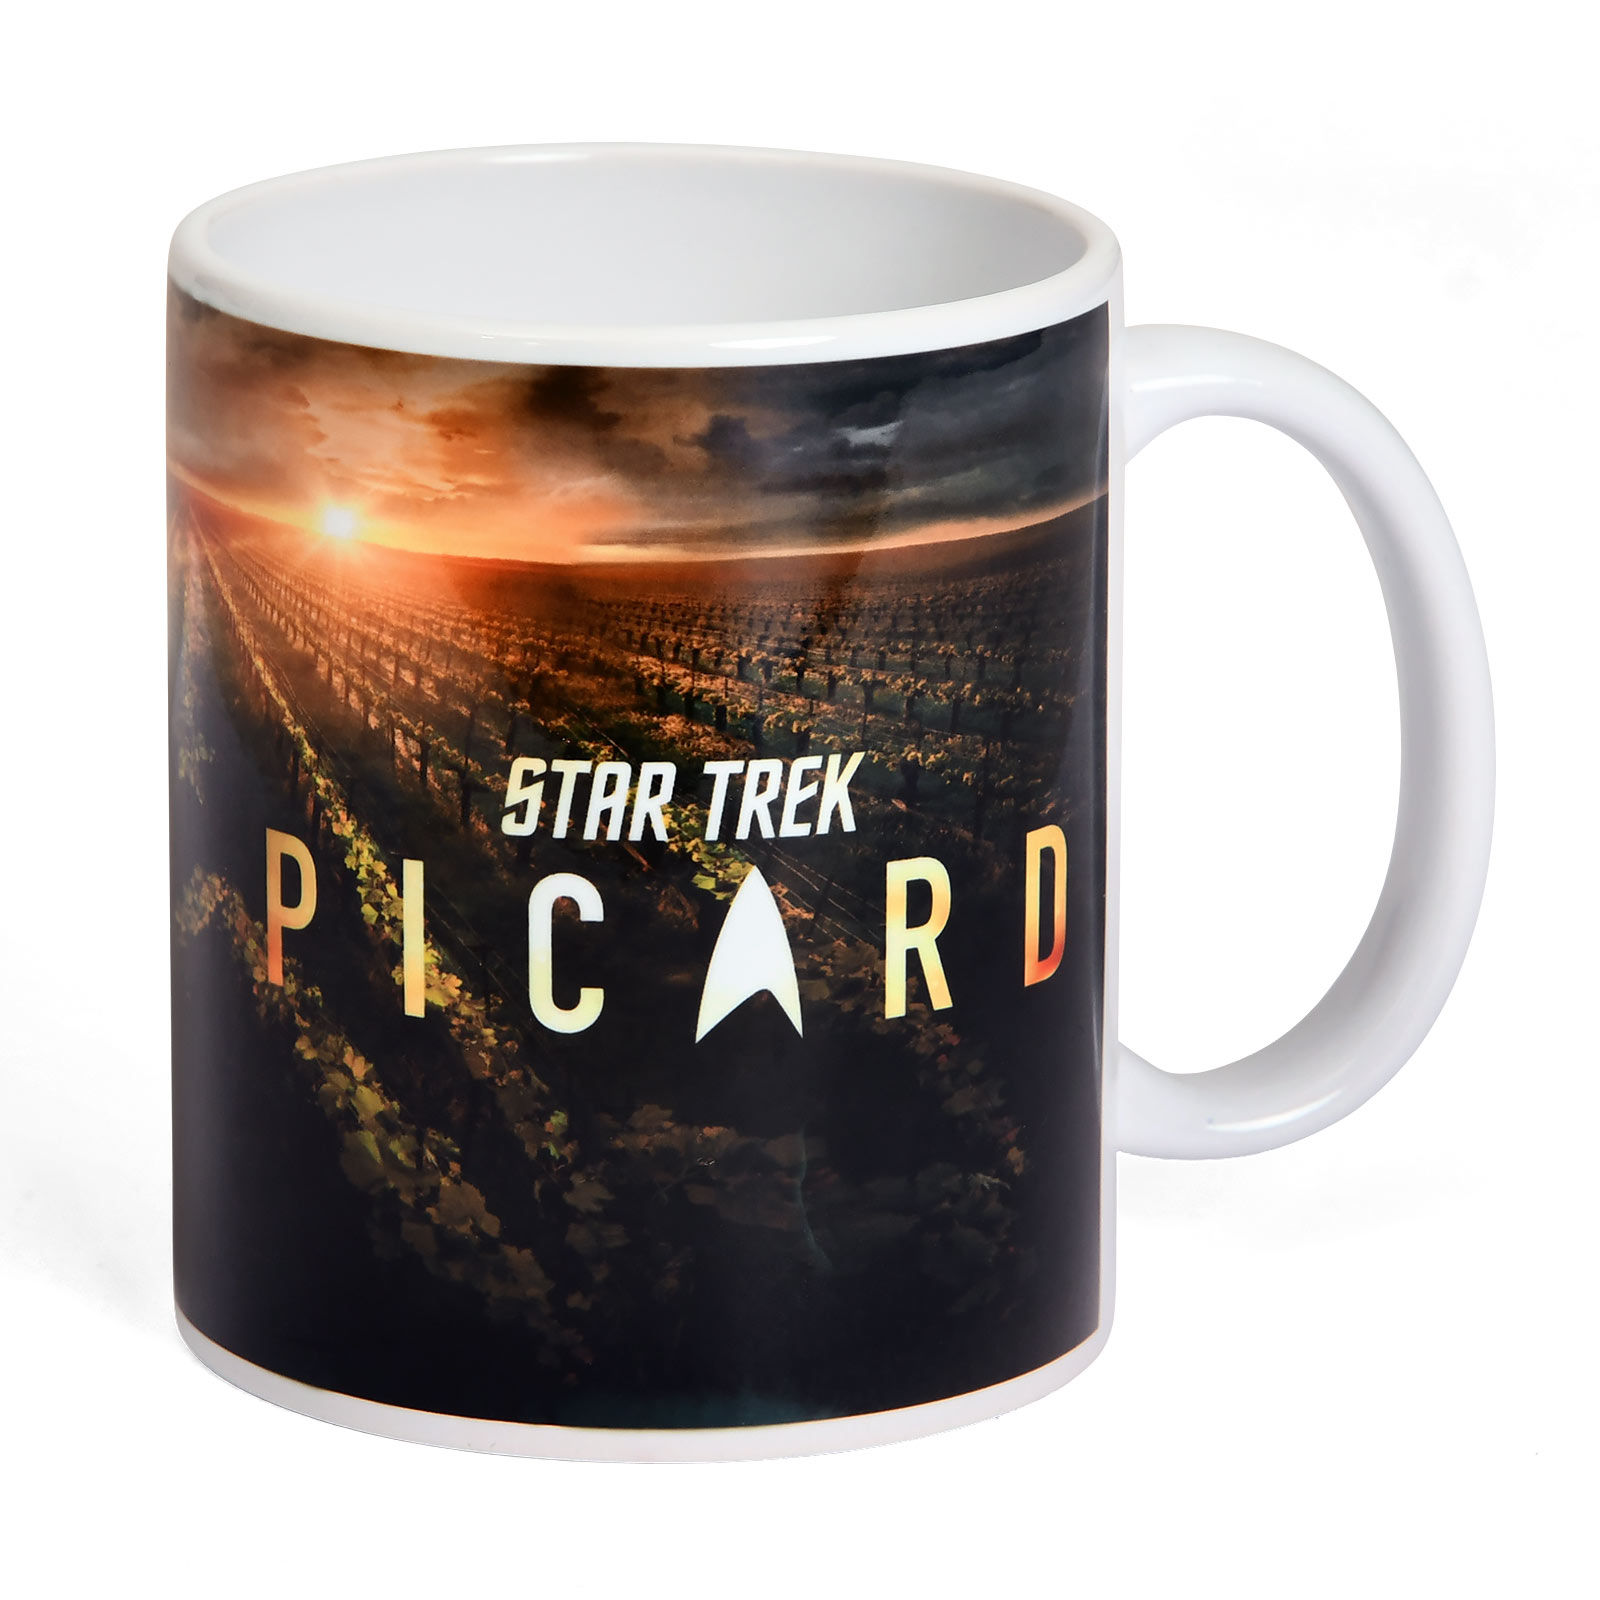 Star Trek - Picard Chateau Mok